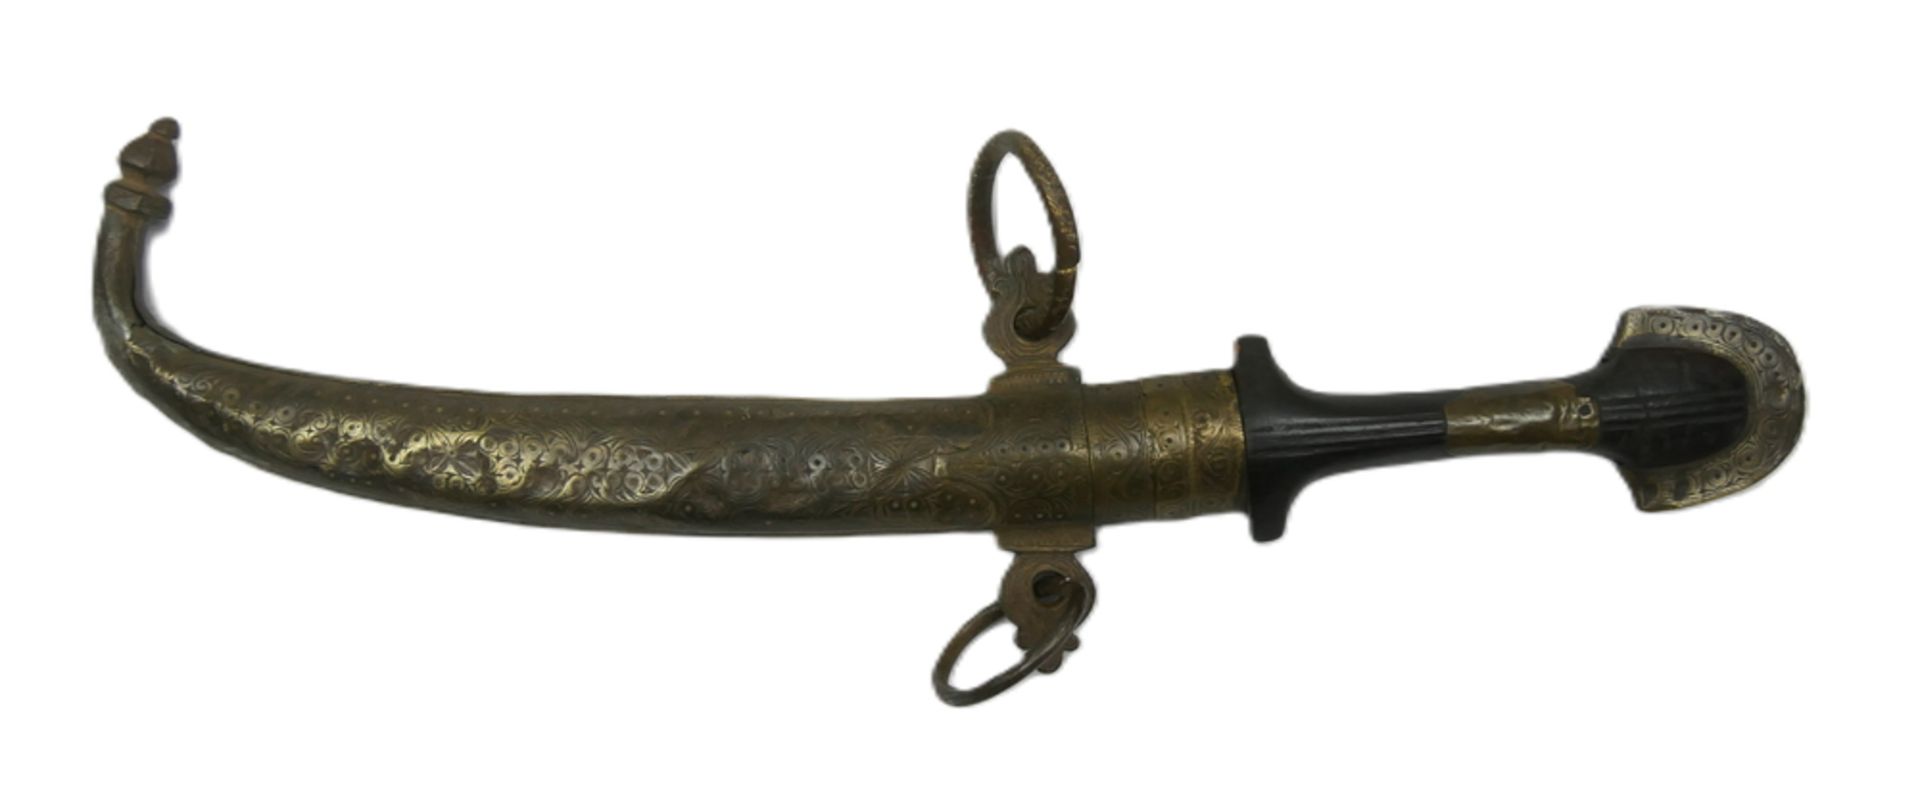 Arabisches / Marokkanisches Messer "Koummya Dolch", 19. Jahrhundert. Mit verzierter, gemeißelter